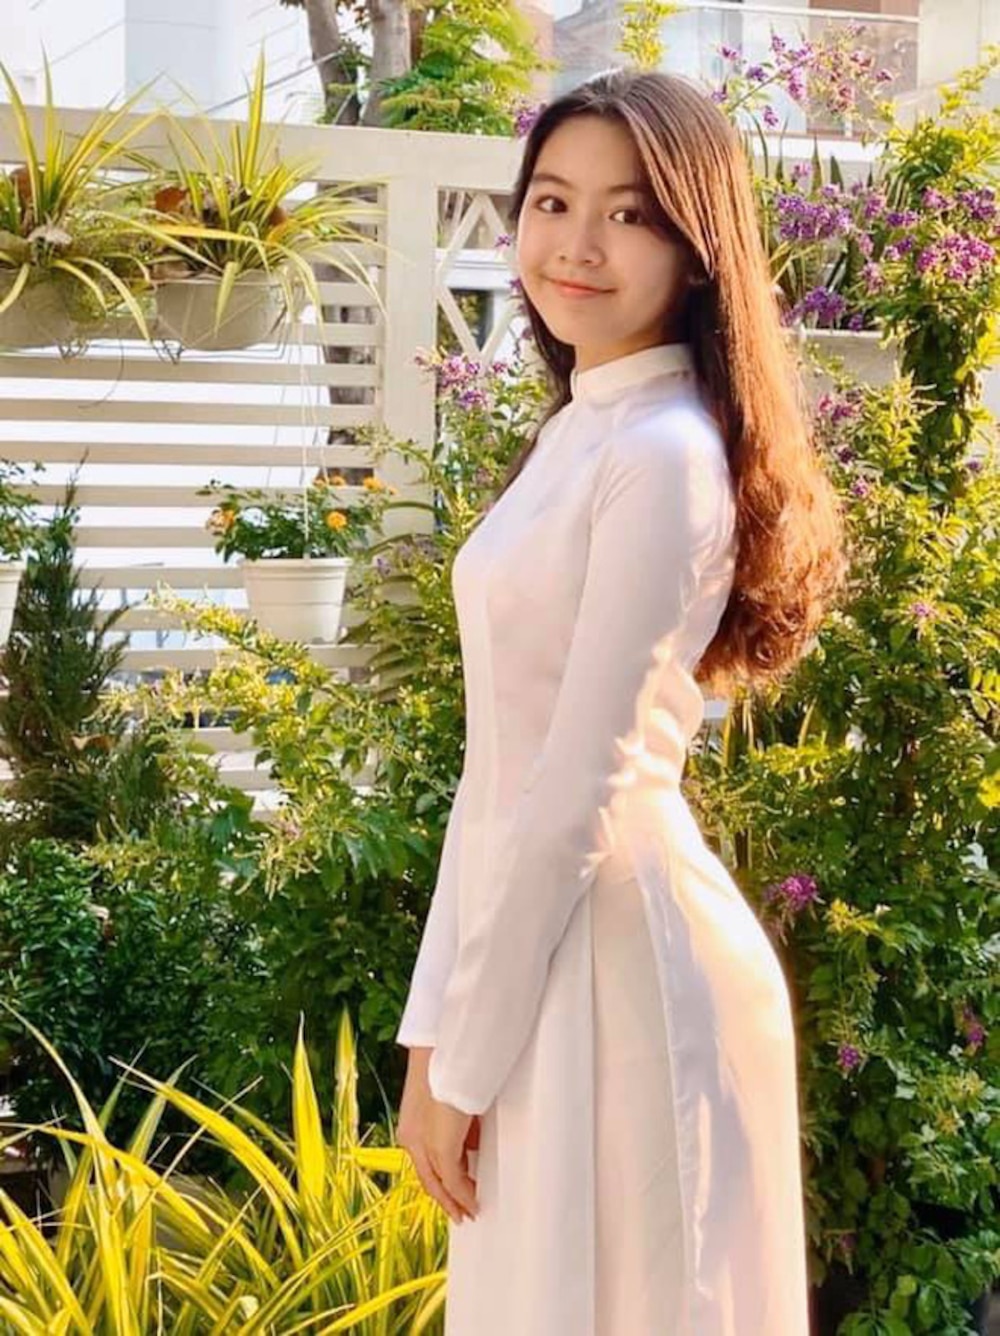 Bình rượu mơ của sao Việt: Mới 15 tuổi đã cao tới 1m70, dáng chuẩn hoa hậu tương lai nhưng bất ngờ nhất là phong cách thời trang-15